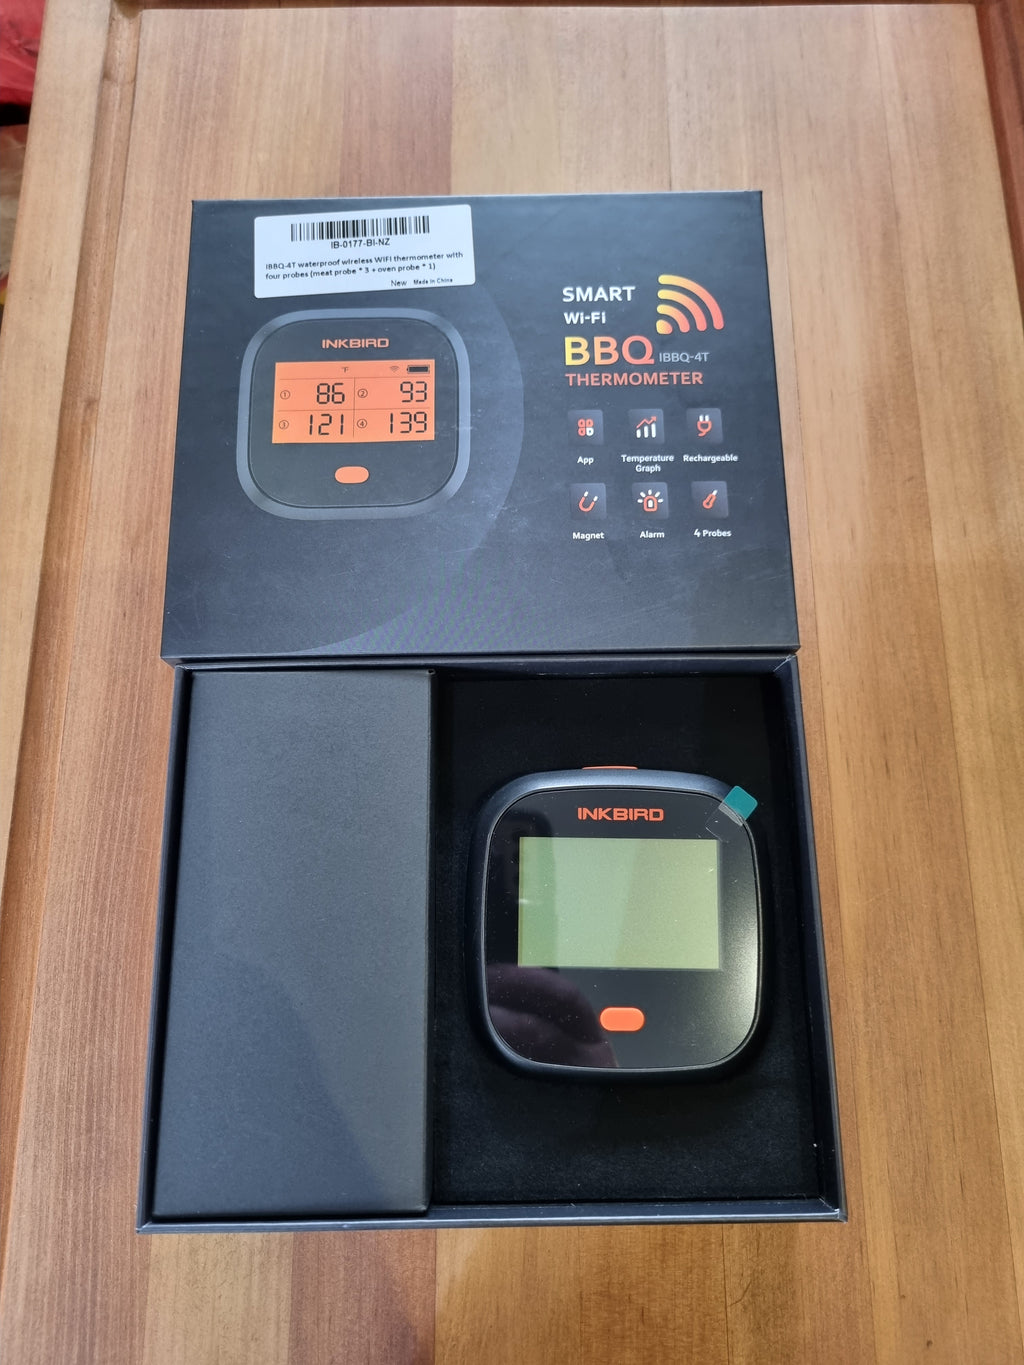 INKBIRD Smart Wi-Fi BBQ Thermometer IBBQ-4T